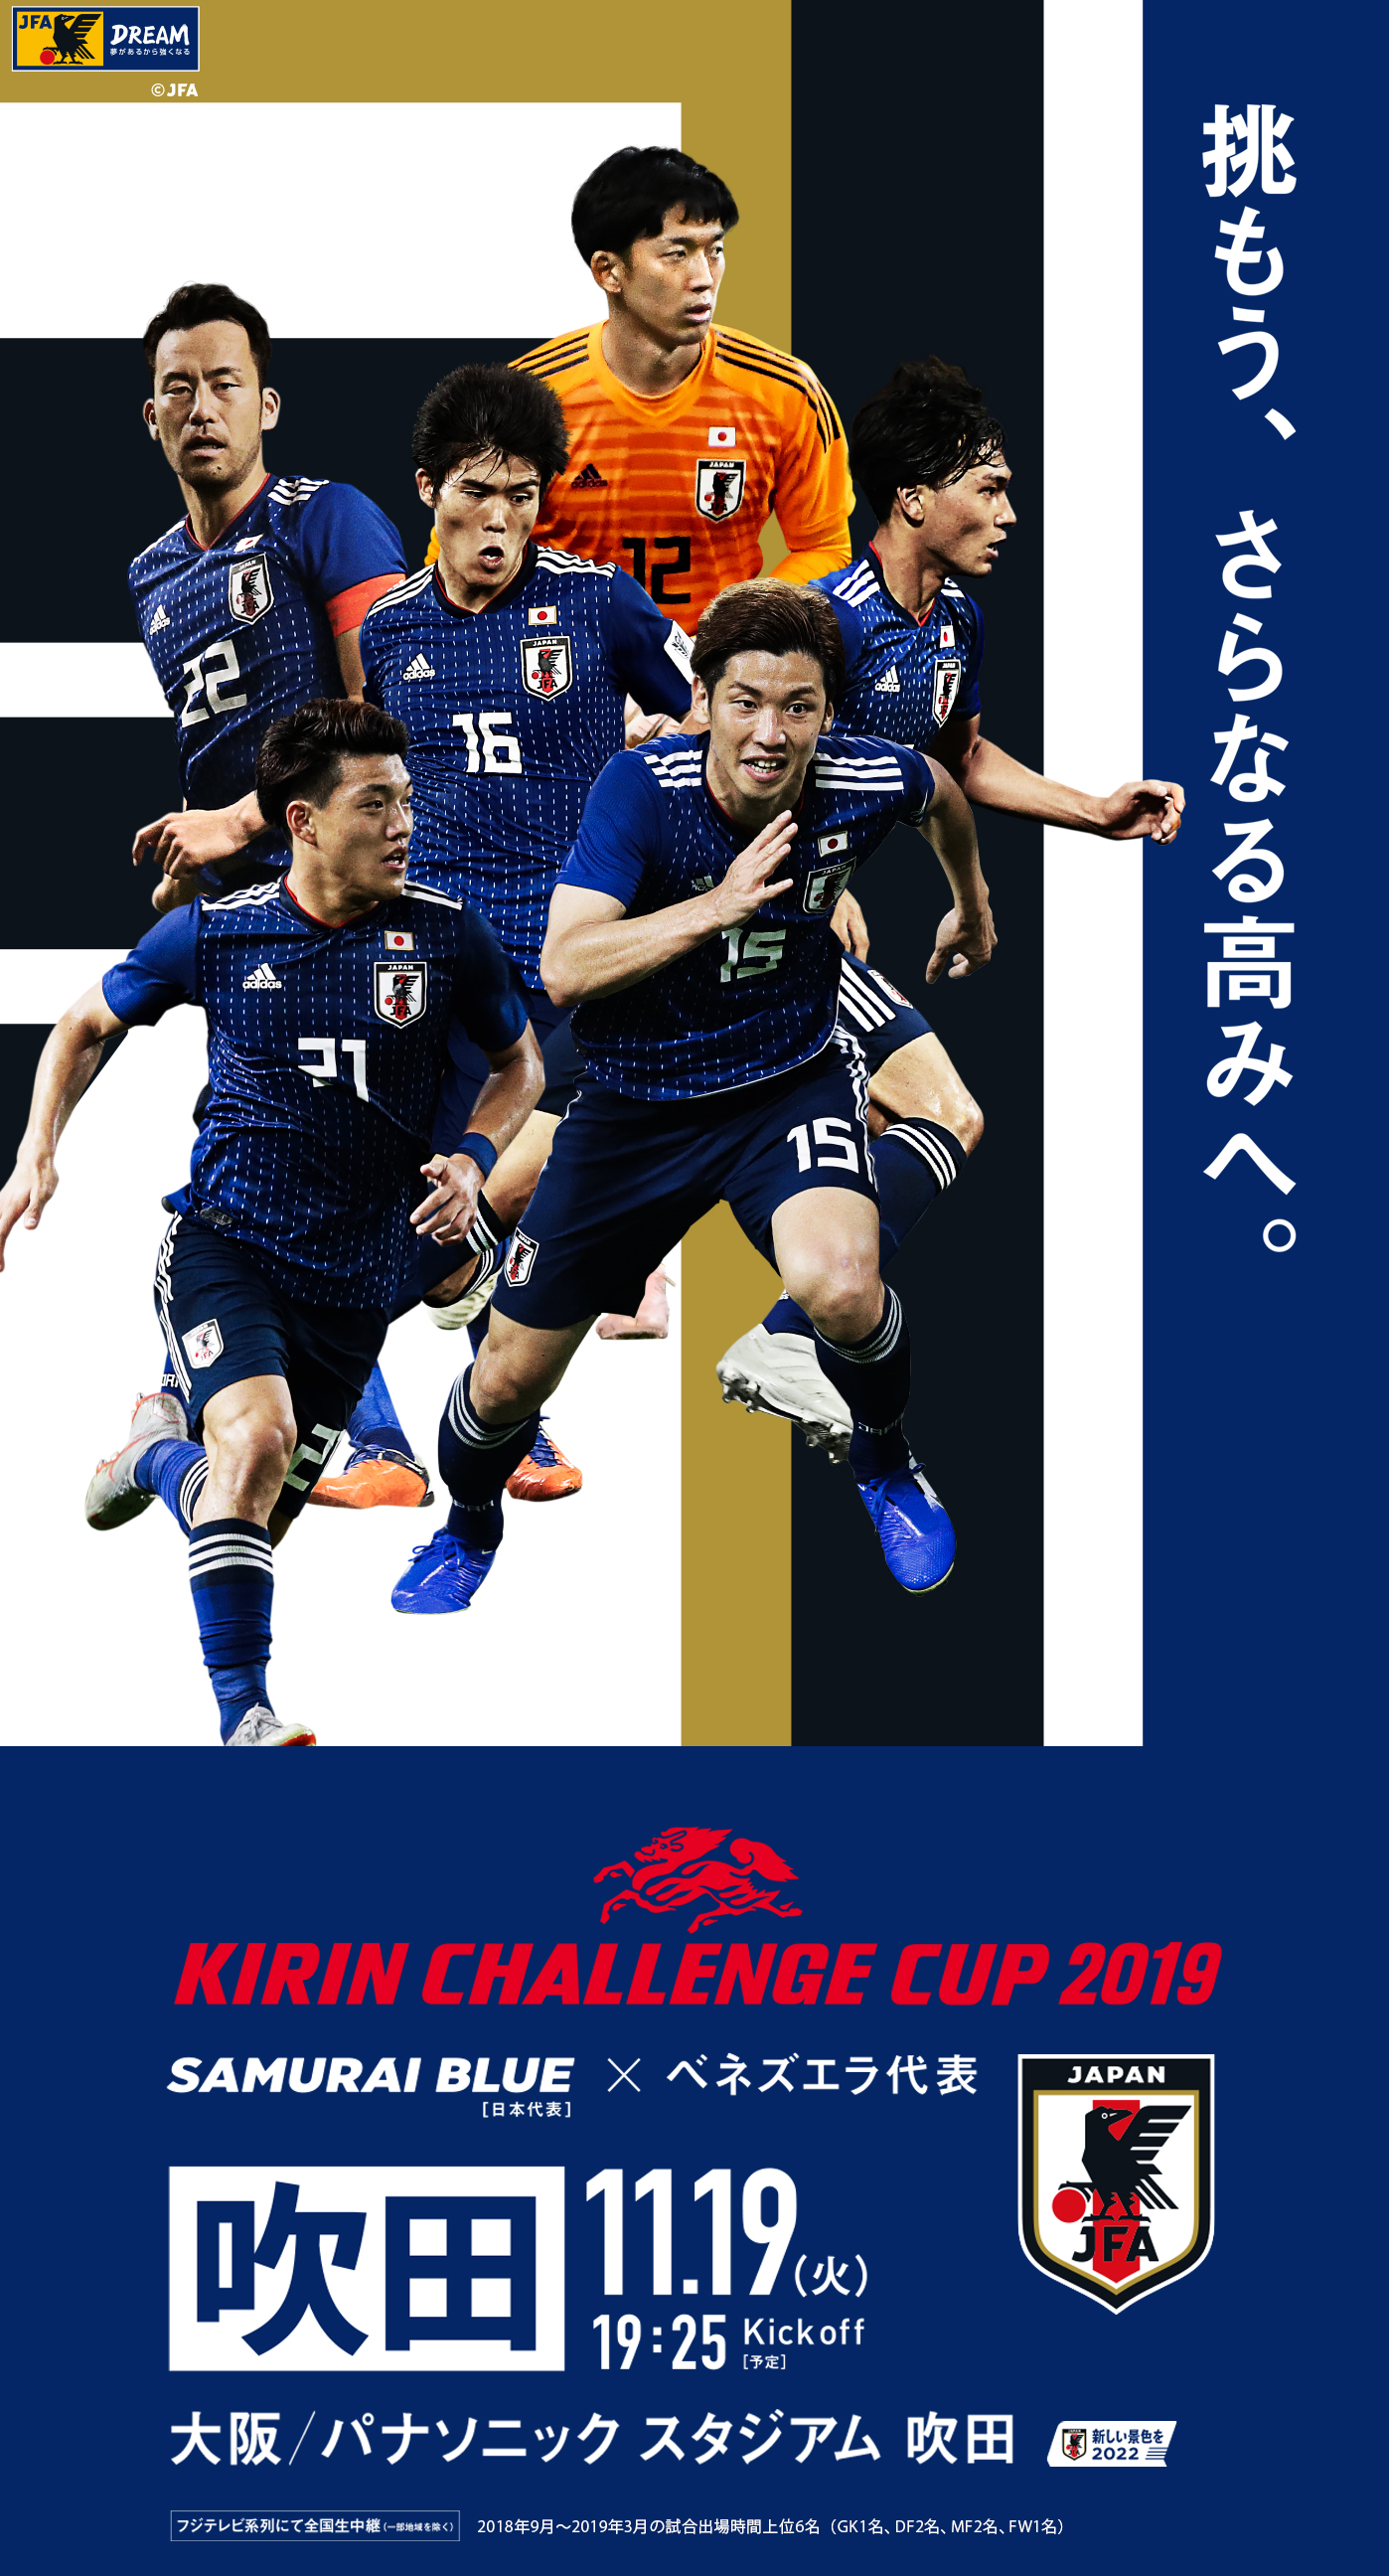 壁紙ダウンロード キリンチャレンジカップ19 11 19 Top Samurai Blue 日本代表 Jfa 日本サッカー協会